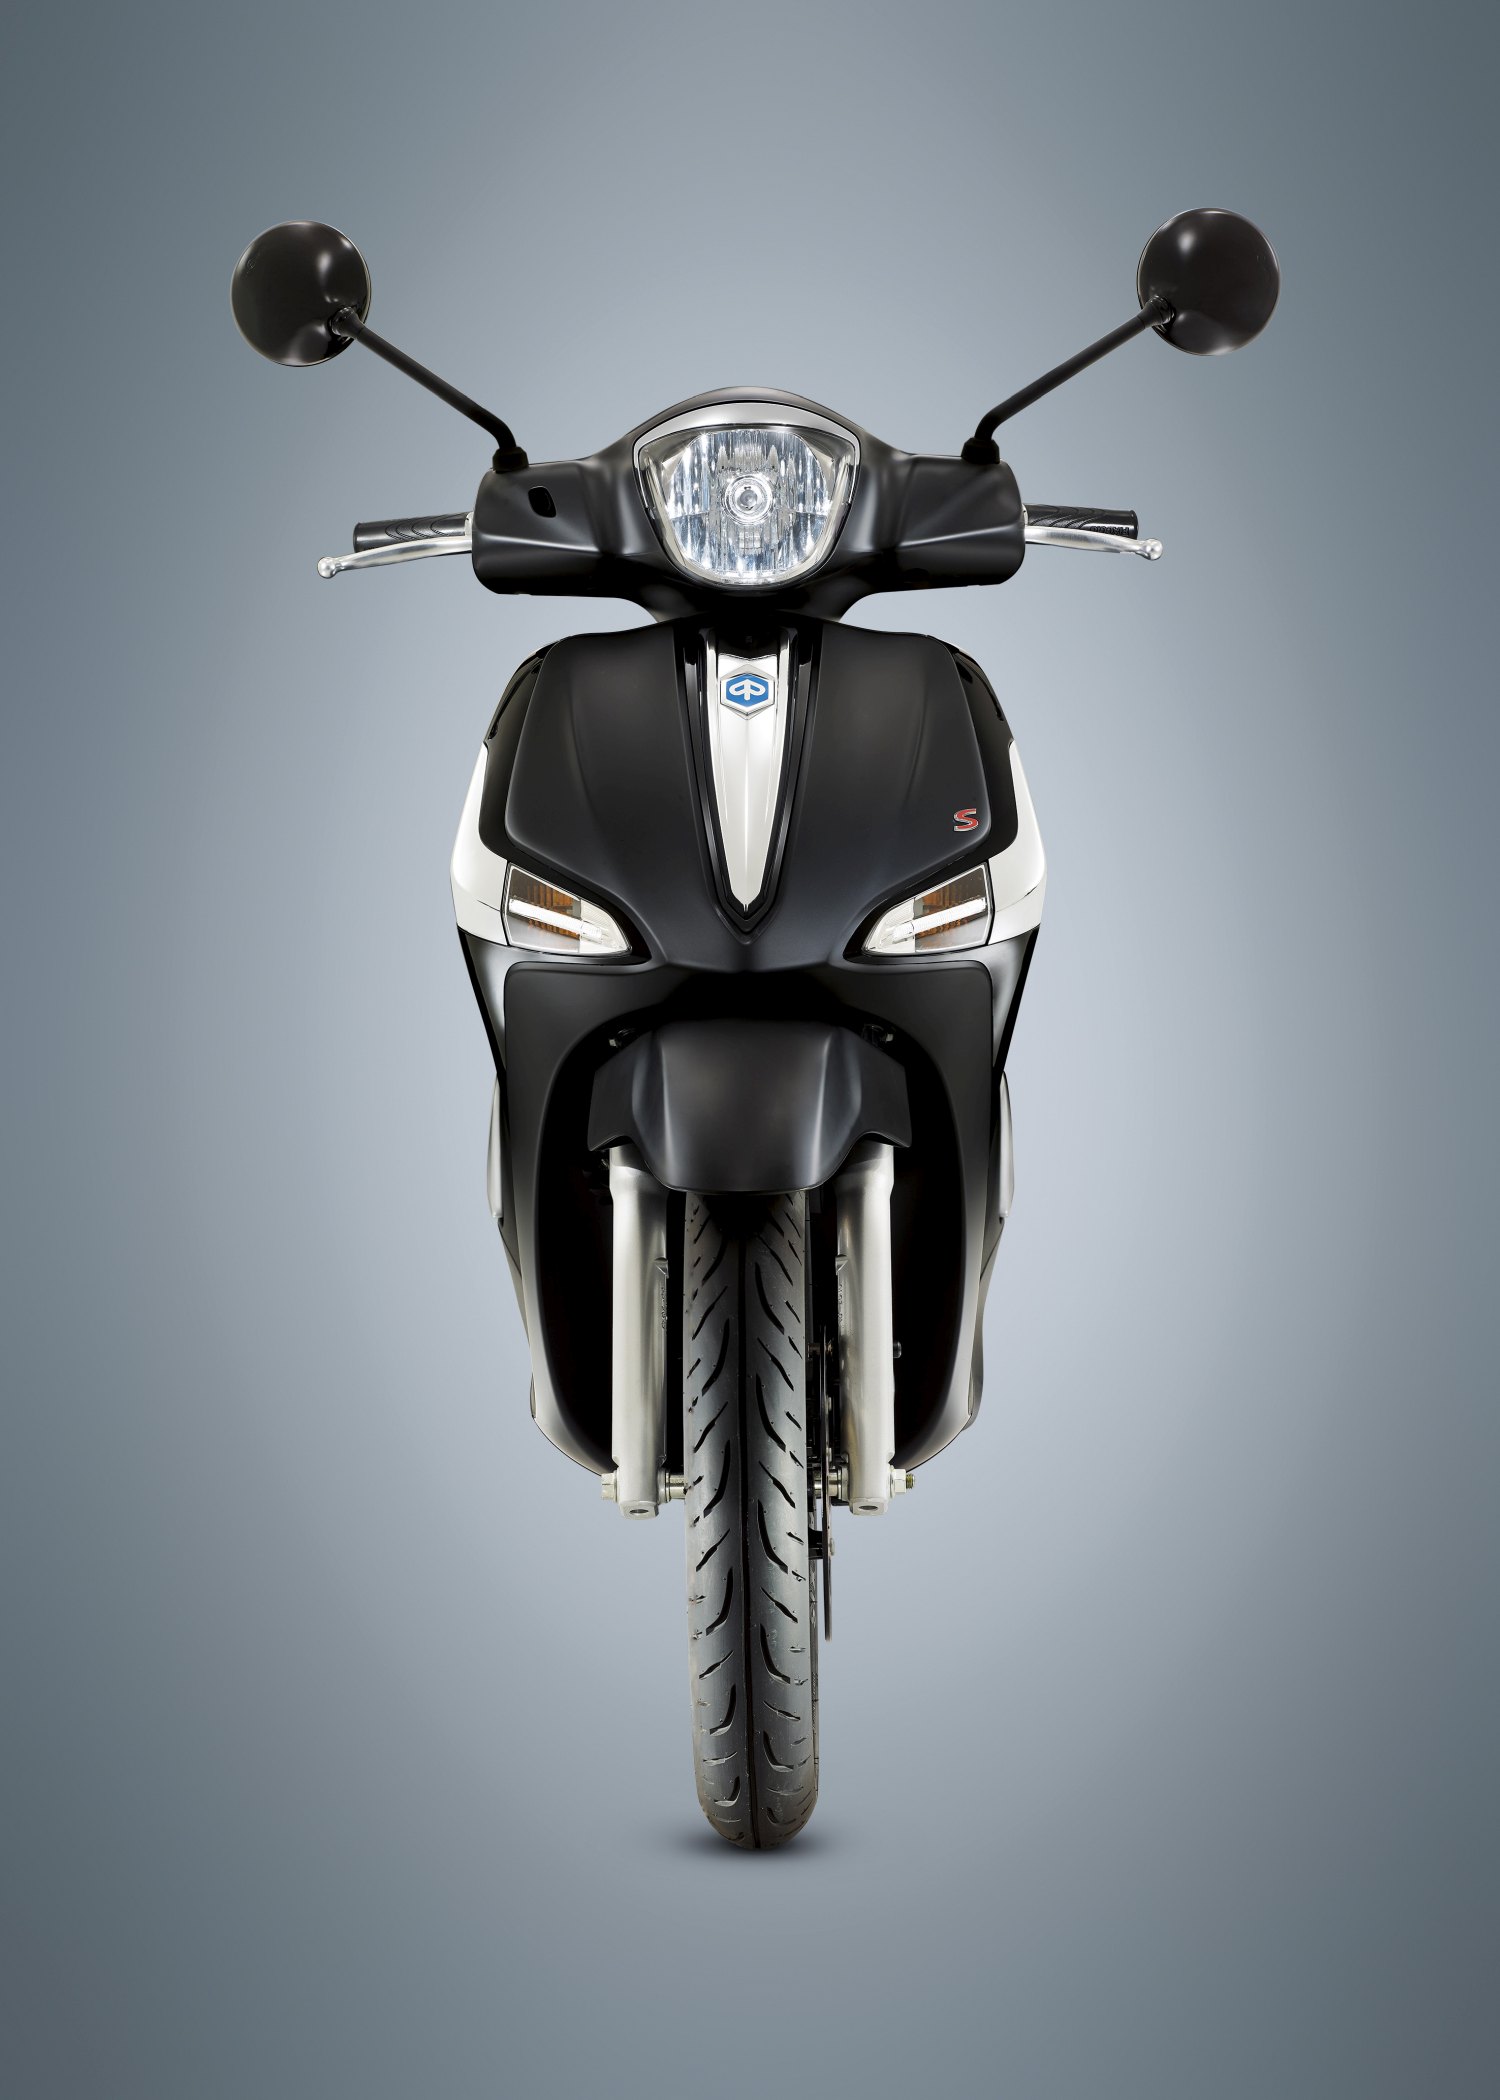 Vista frontal del icónico scooter Piaggio Liberty 20 mostrando su diseño elegante y faro distintivo.